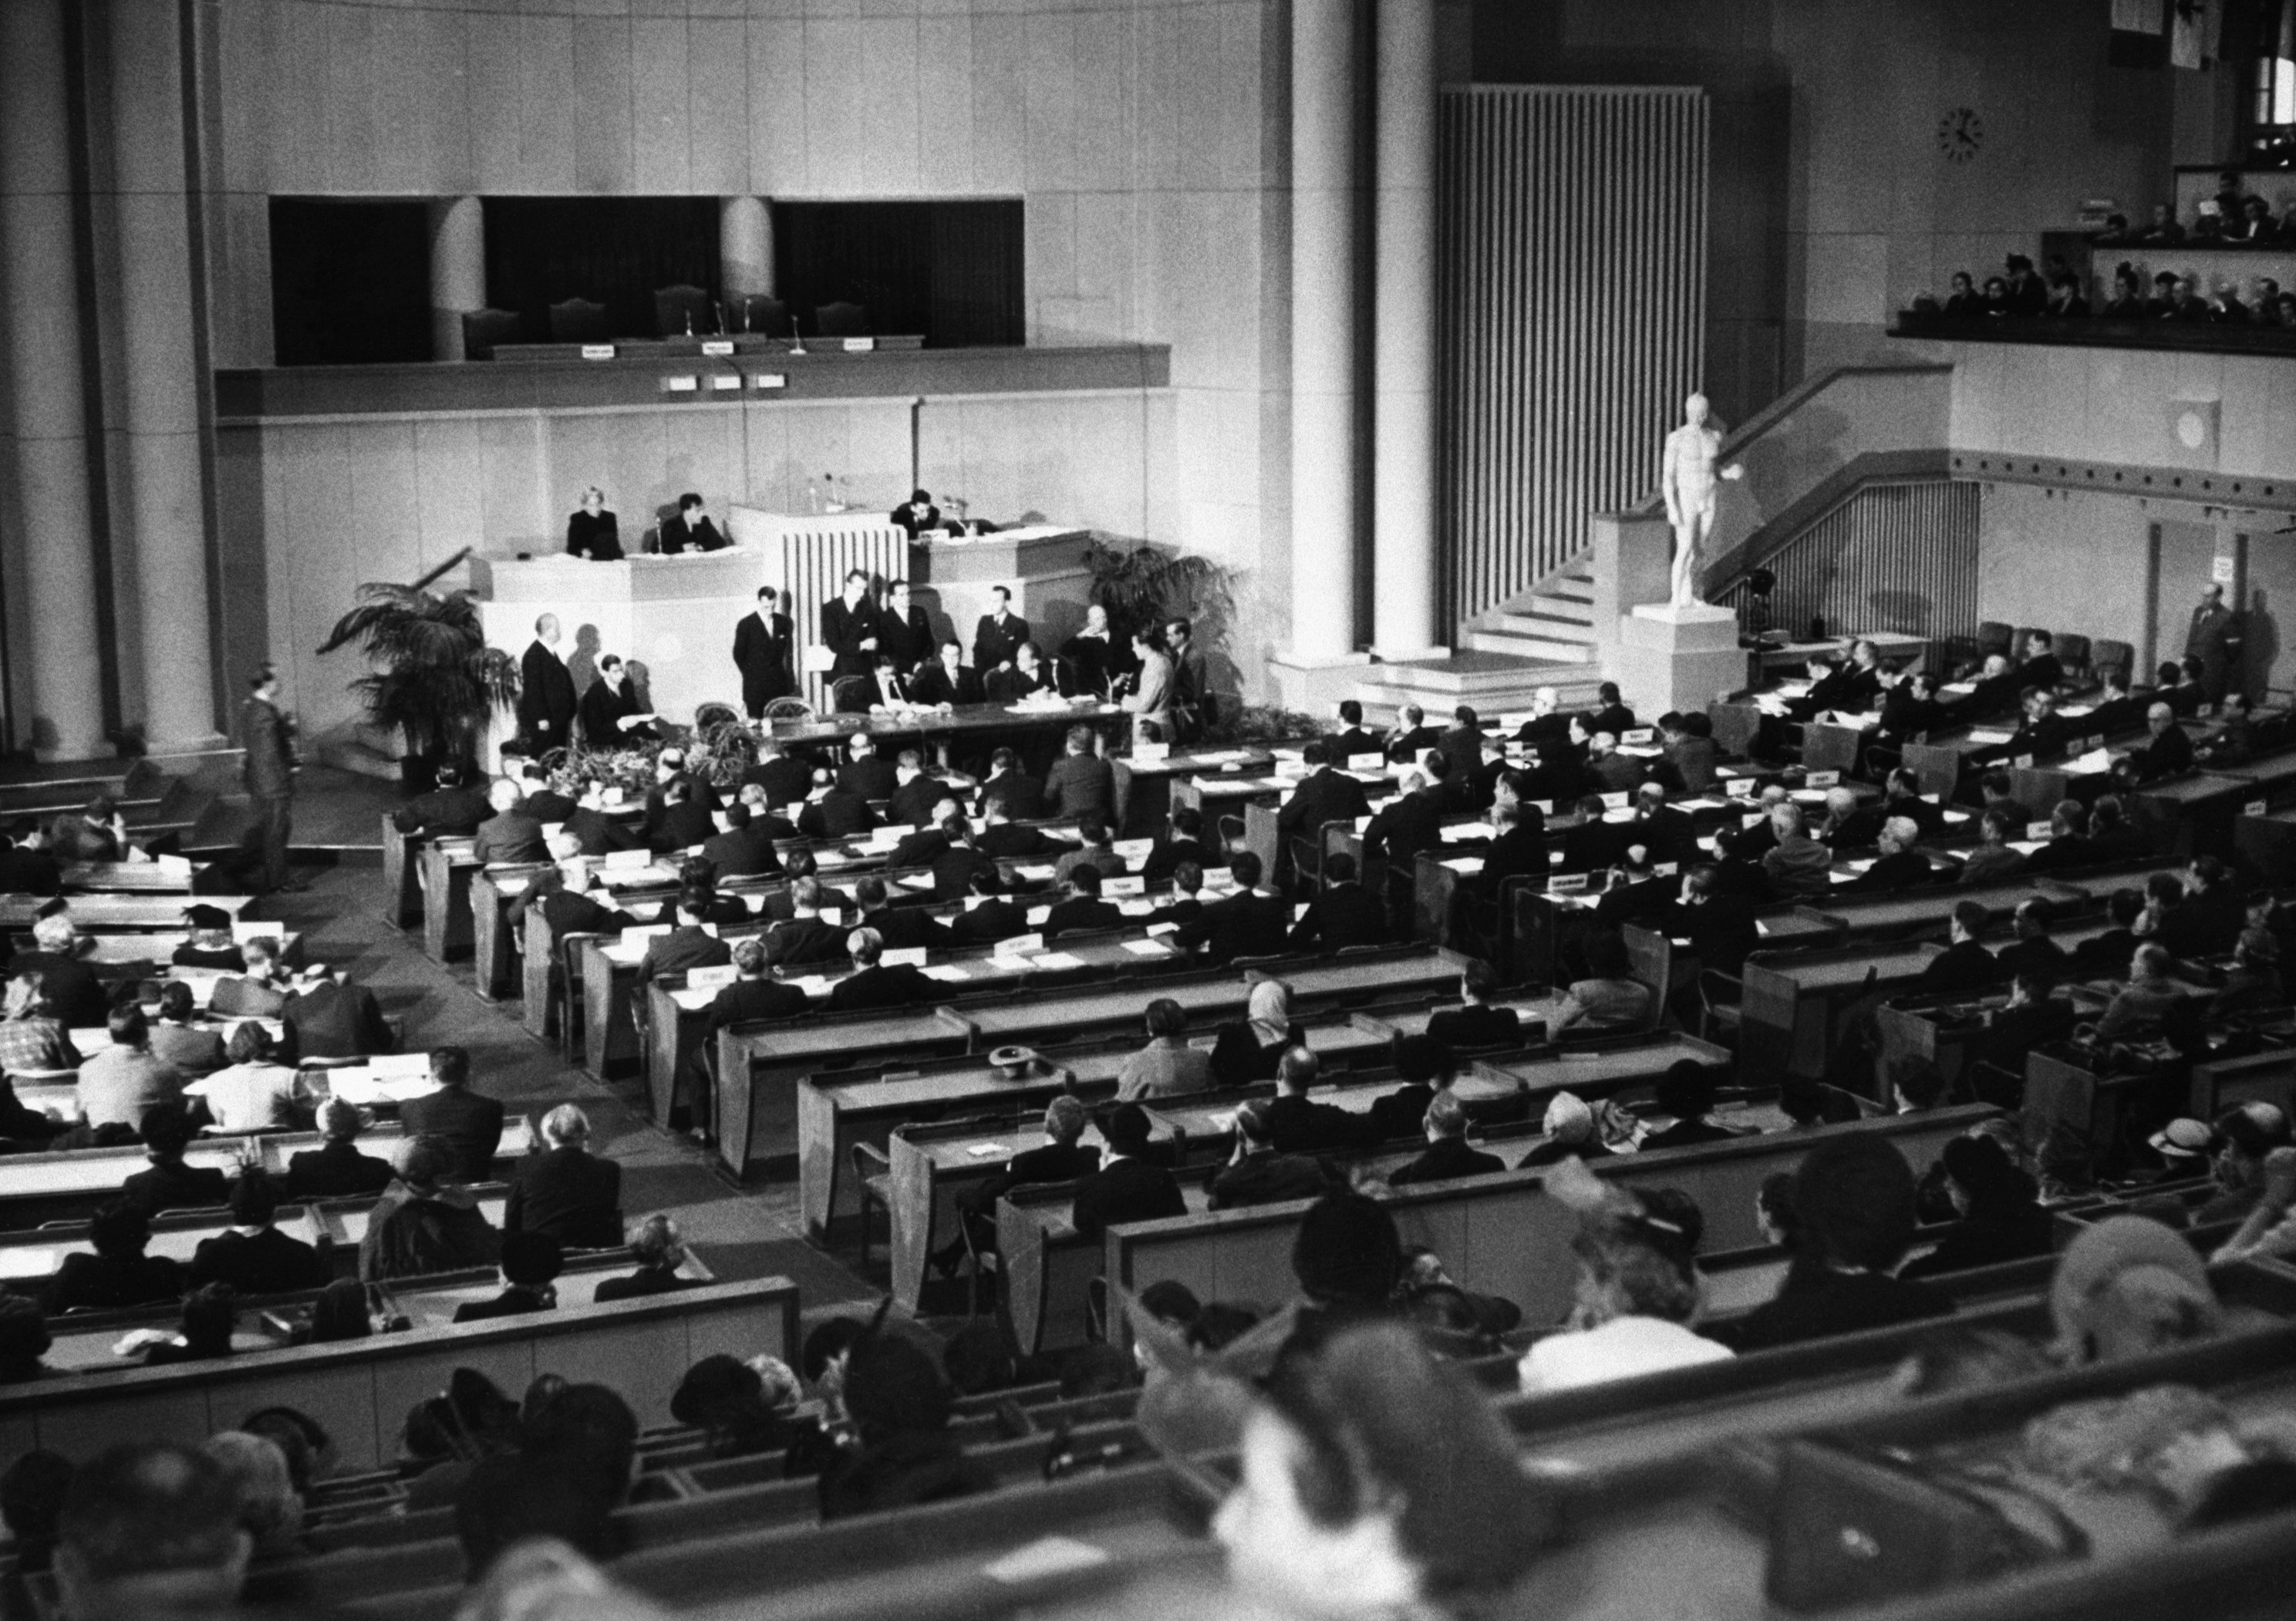 Конвенция 1949 г